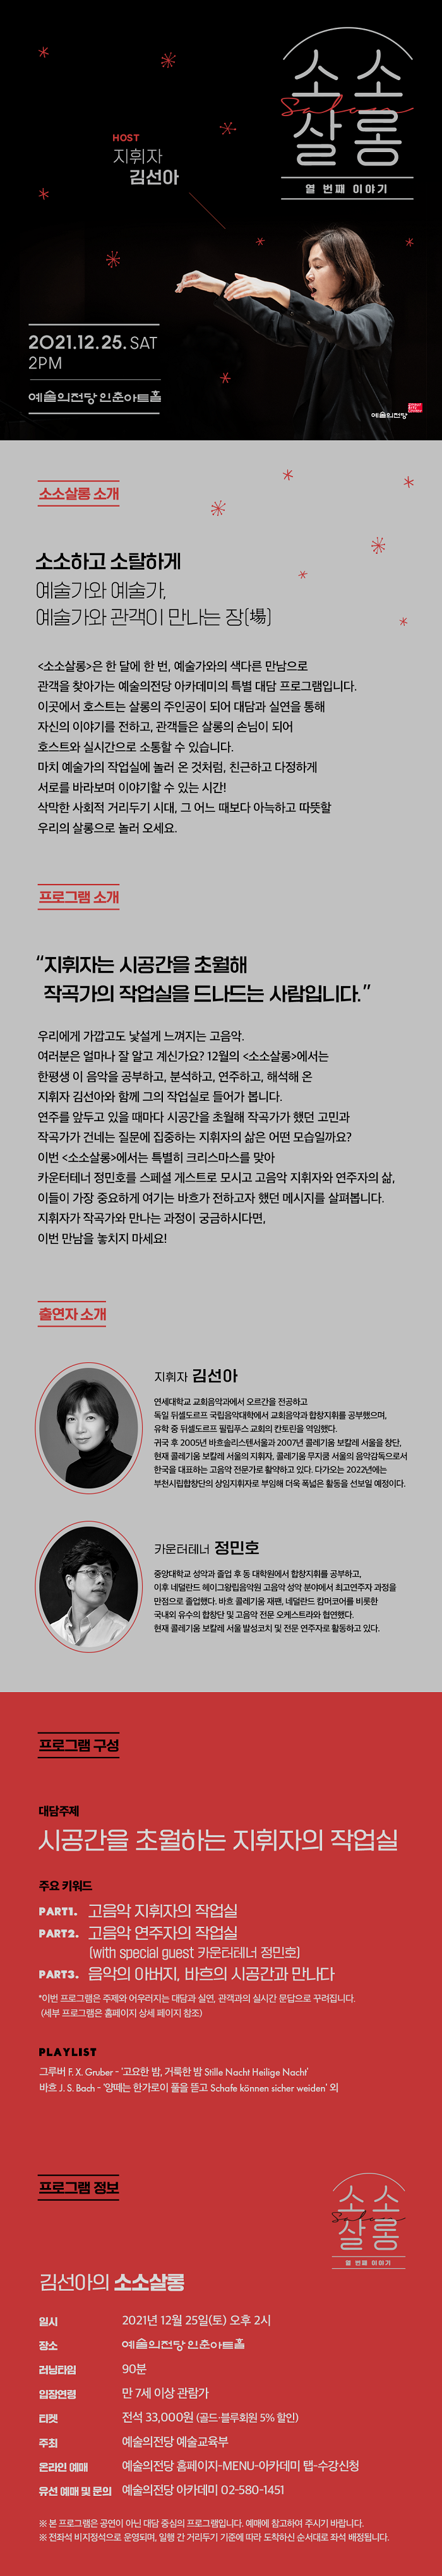 소소살롱_12월카드뉴스_700.png